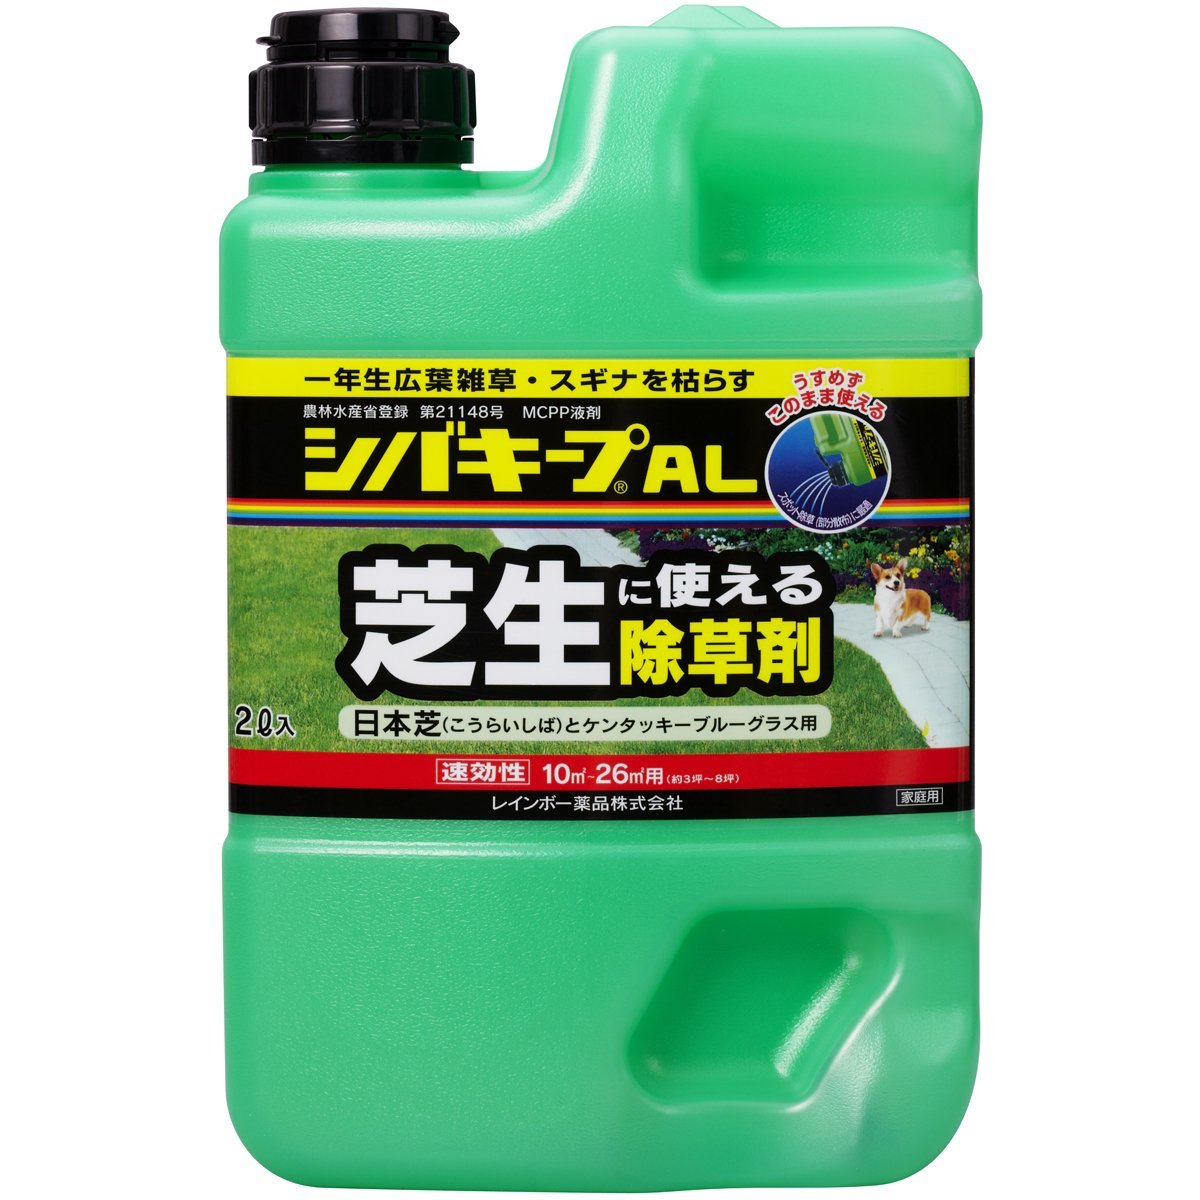 【送料込】 レインボー薬品 シバキープAL 2L 芝生用 除草剤